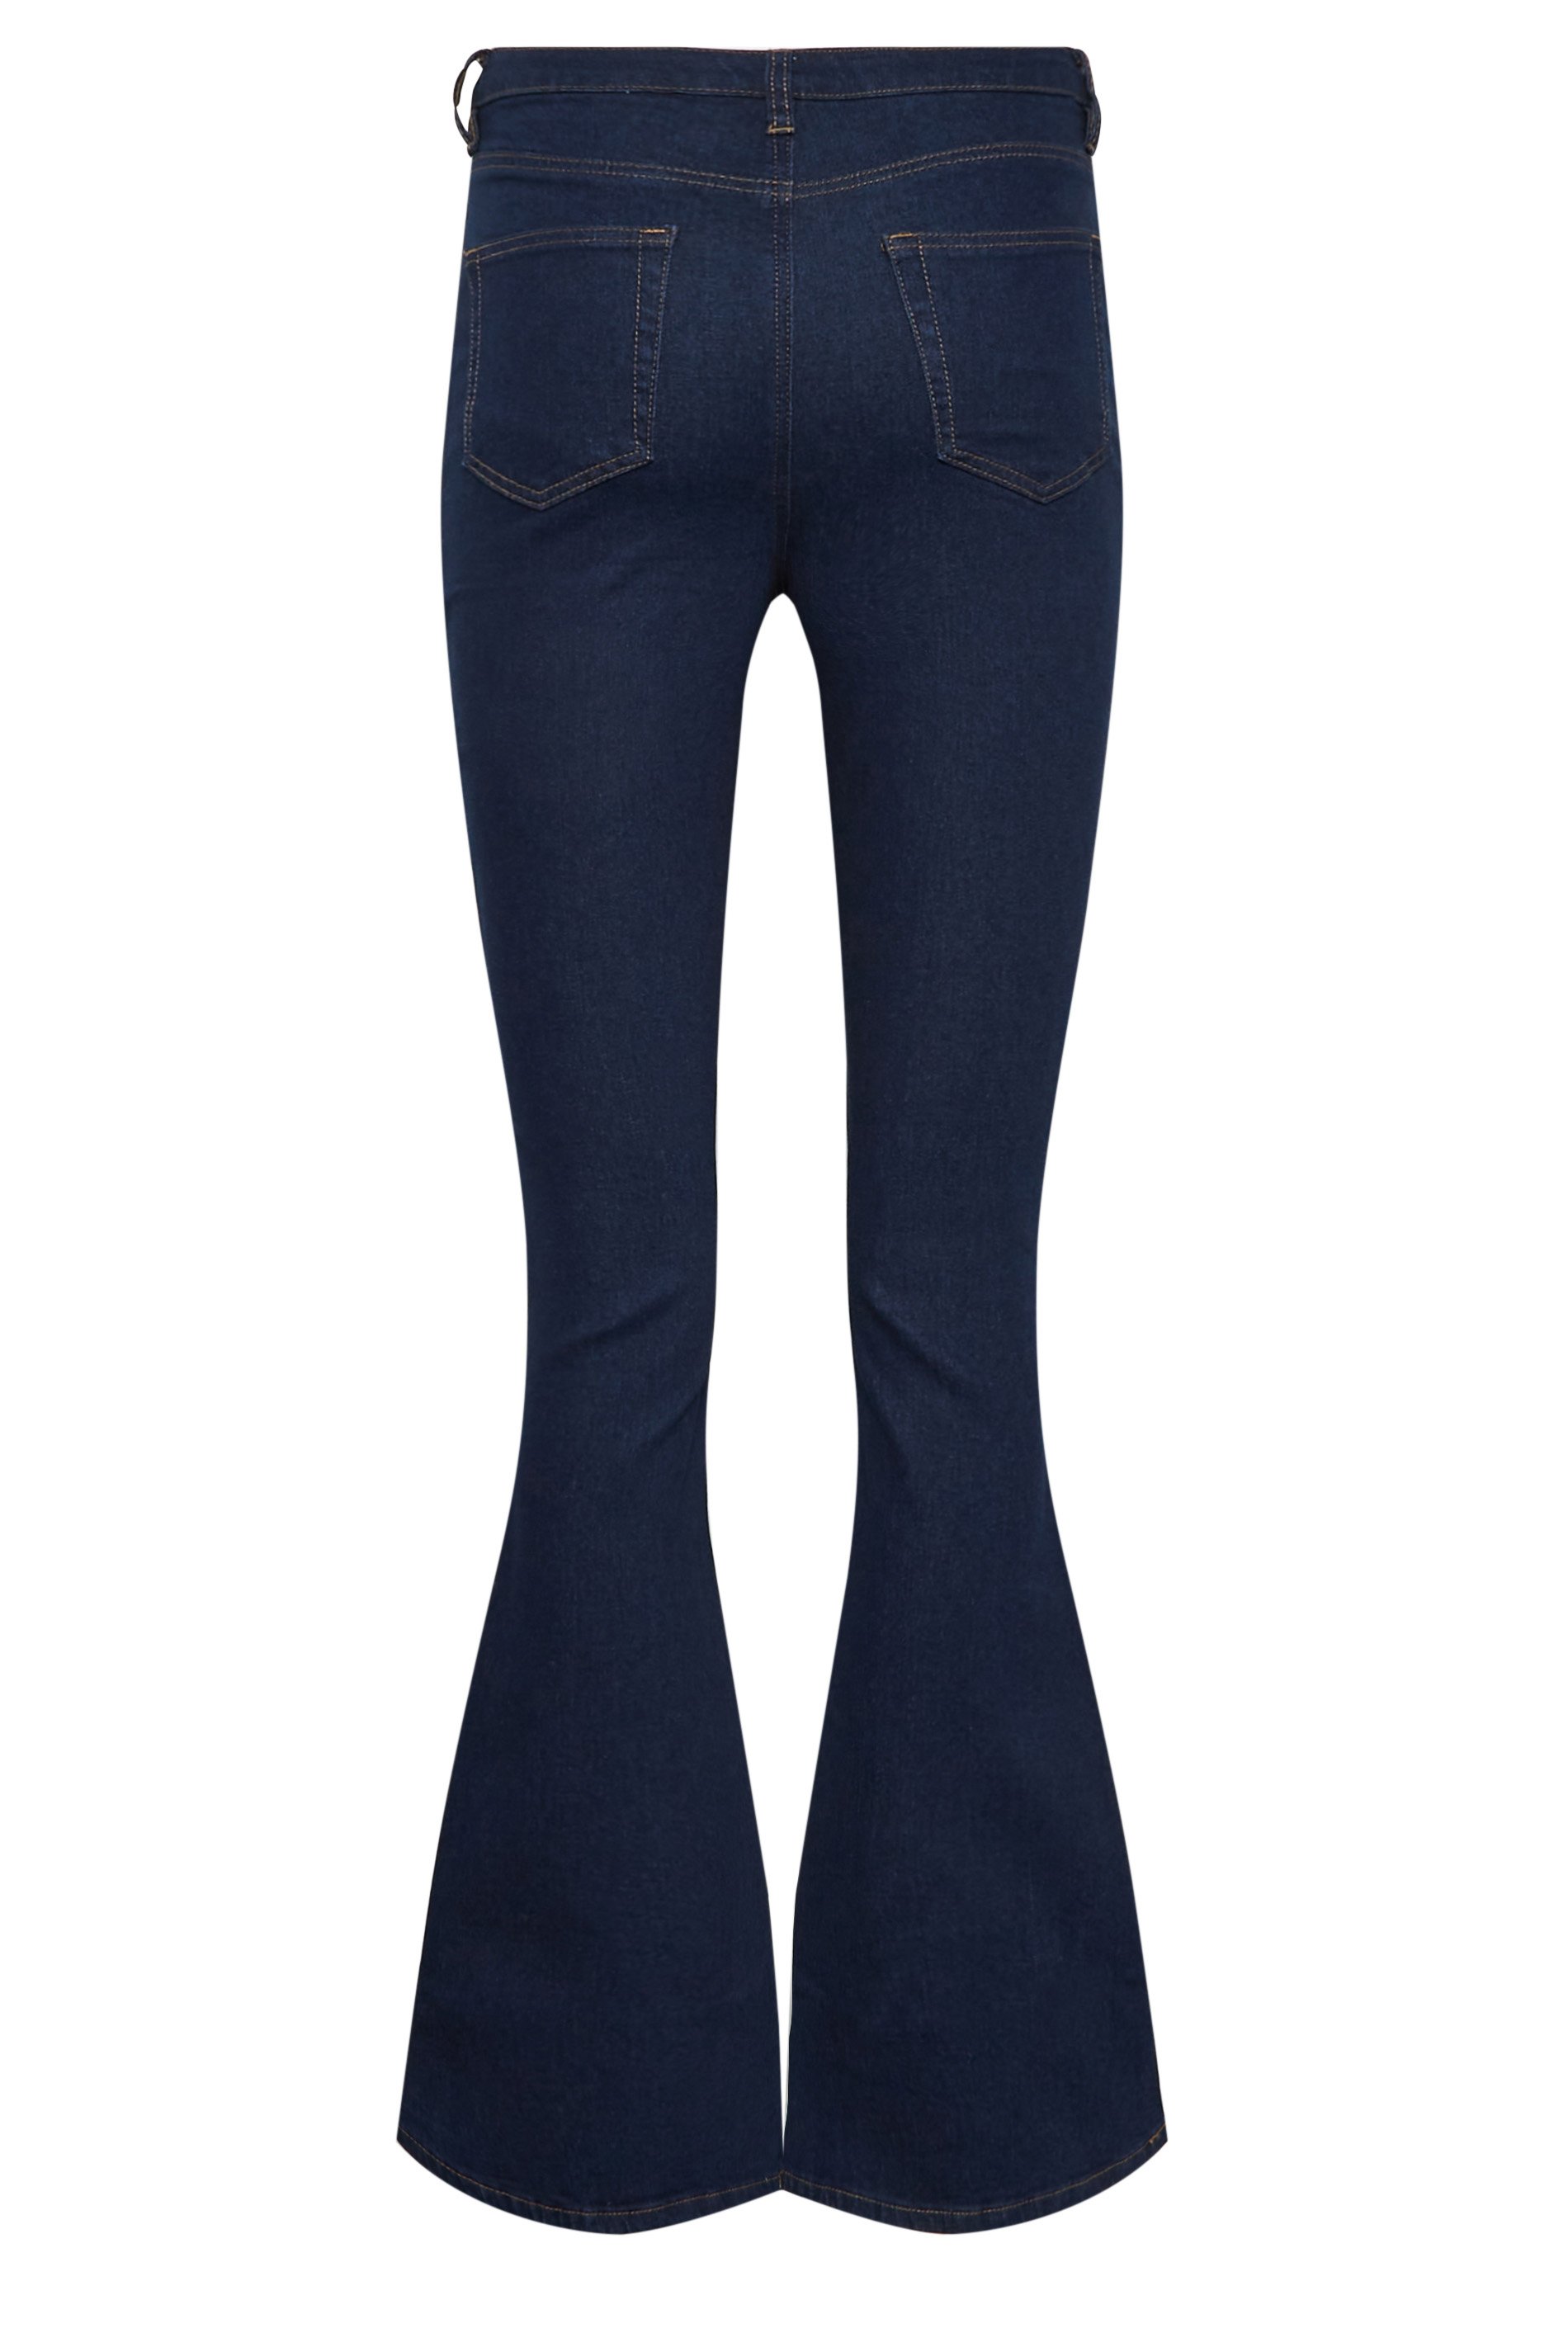 LTS Tall Indigo Blue Denim Flared Jeans